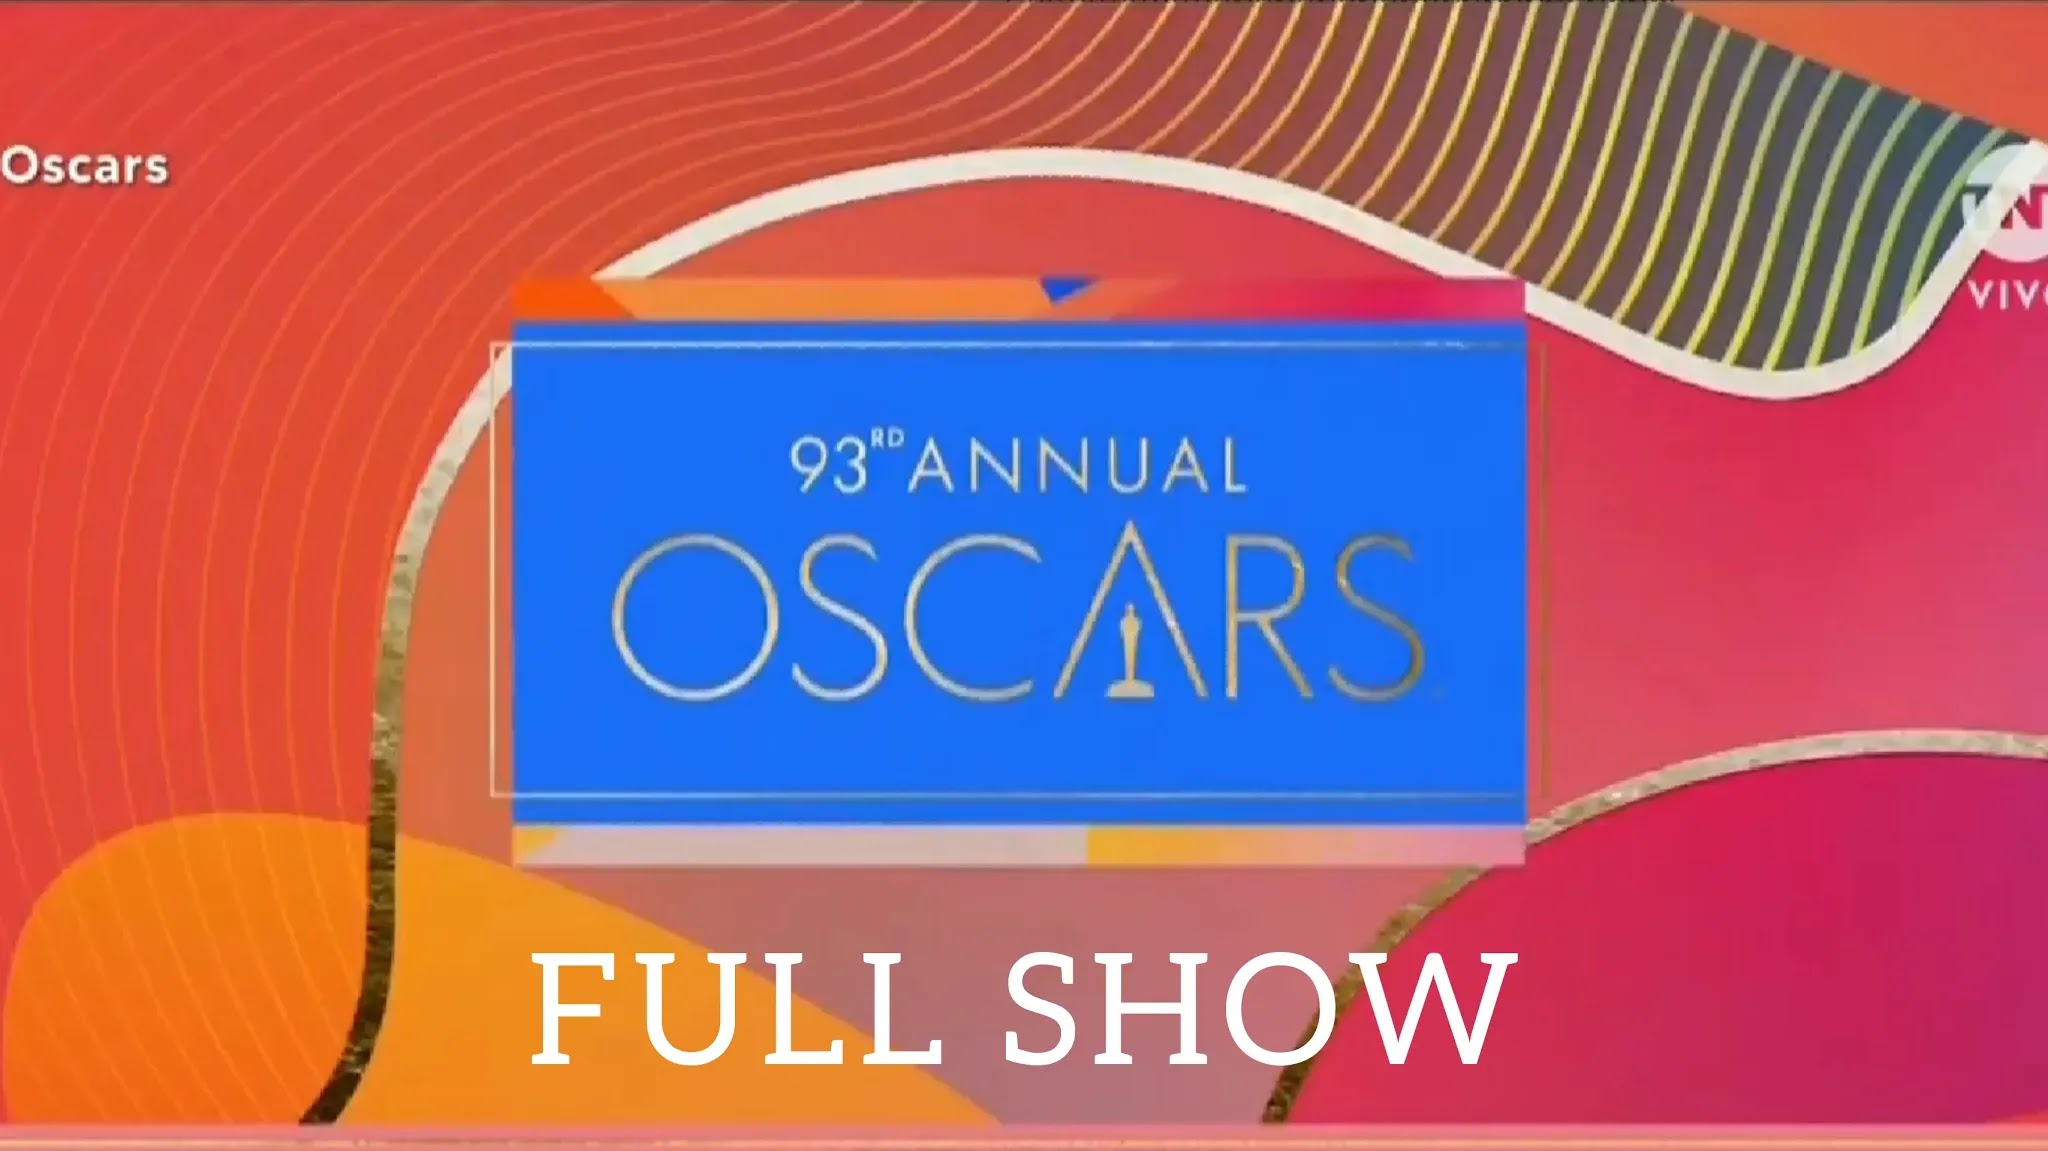 Oscars 2021 Full Show Premios Oscar 2021 Completo Español